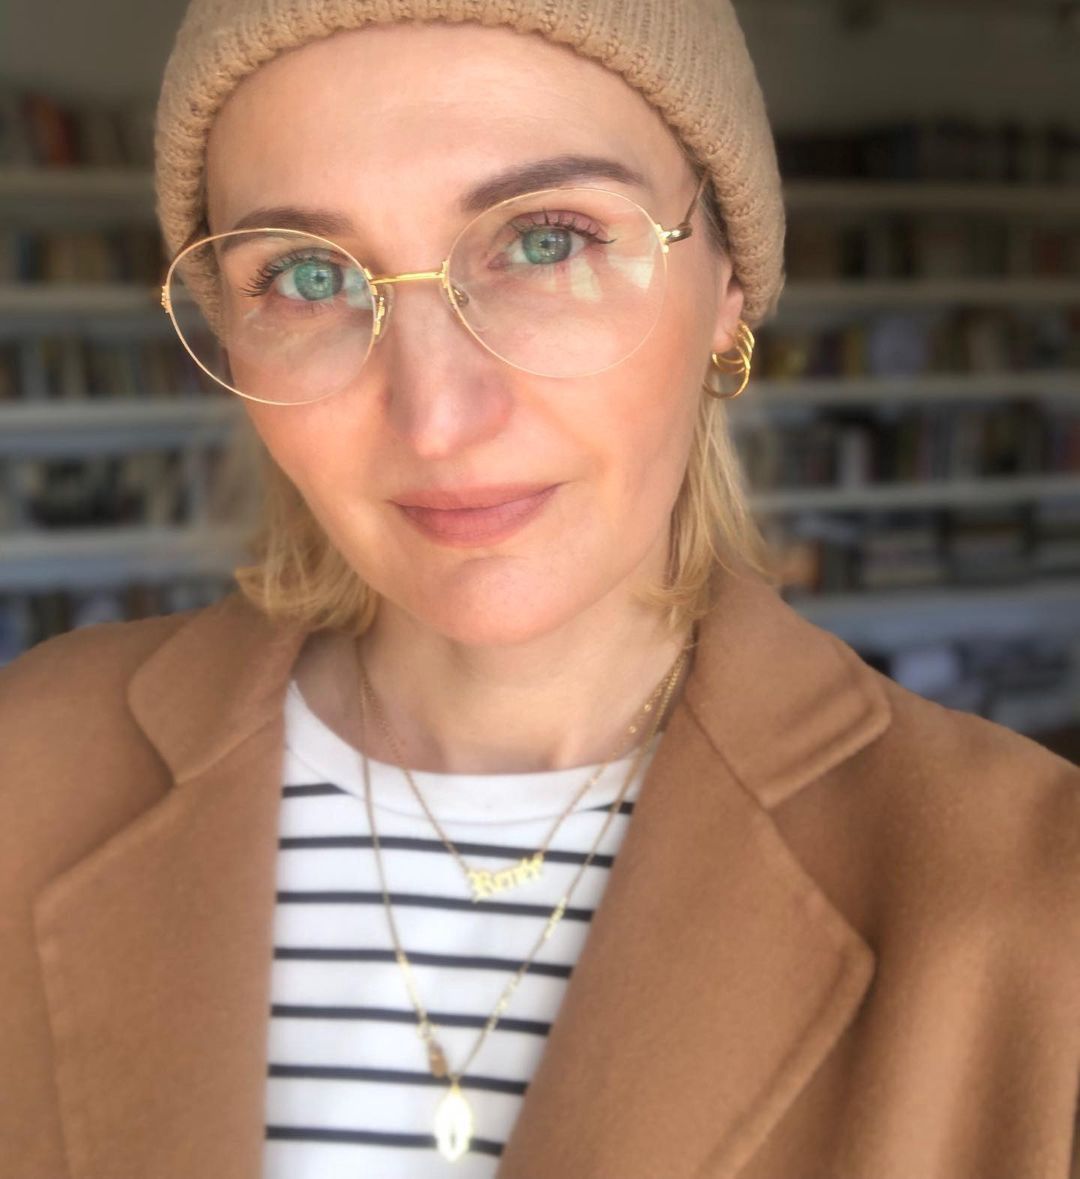 Reni Jusis w modnych okularach w złotej ramce
Instagram/renijusisofficial